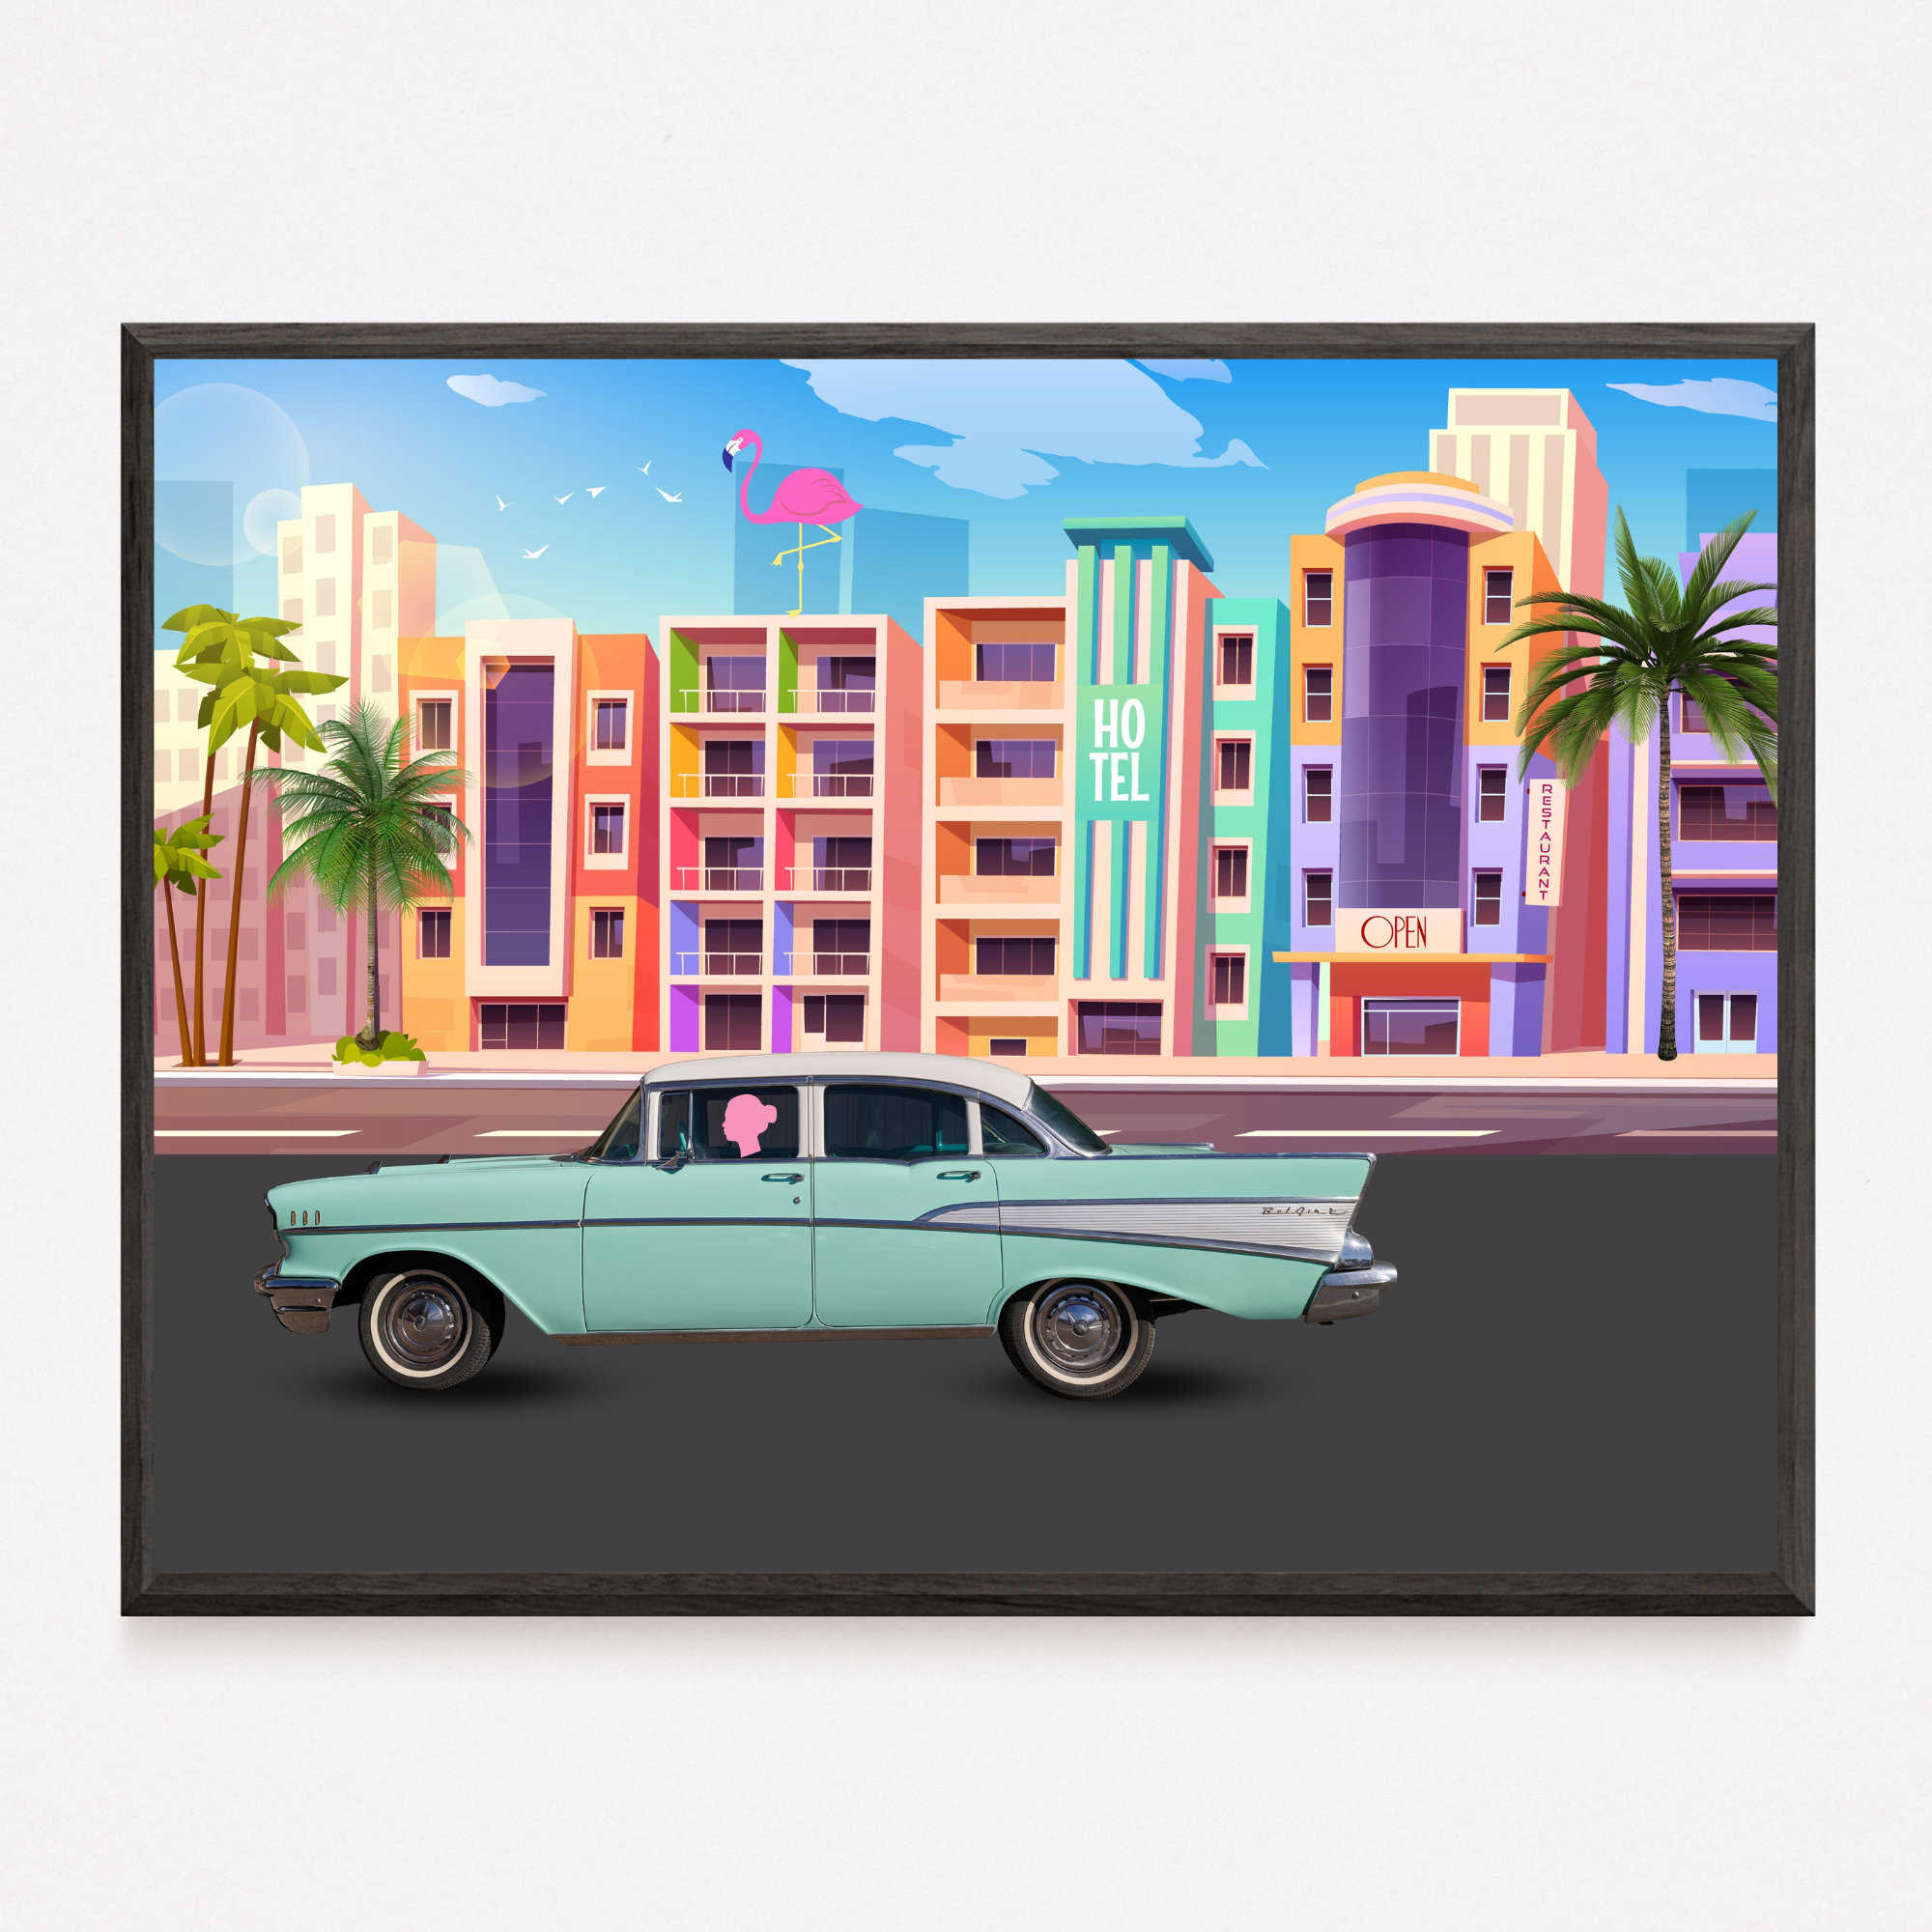 1950s Miami Beach Florida Full Color Brochure